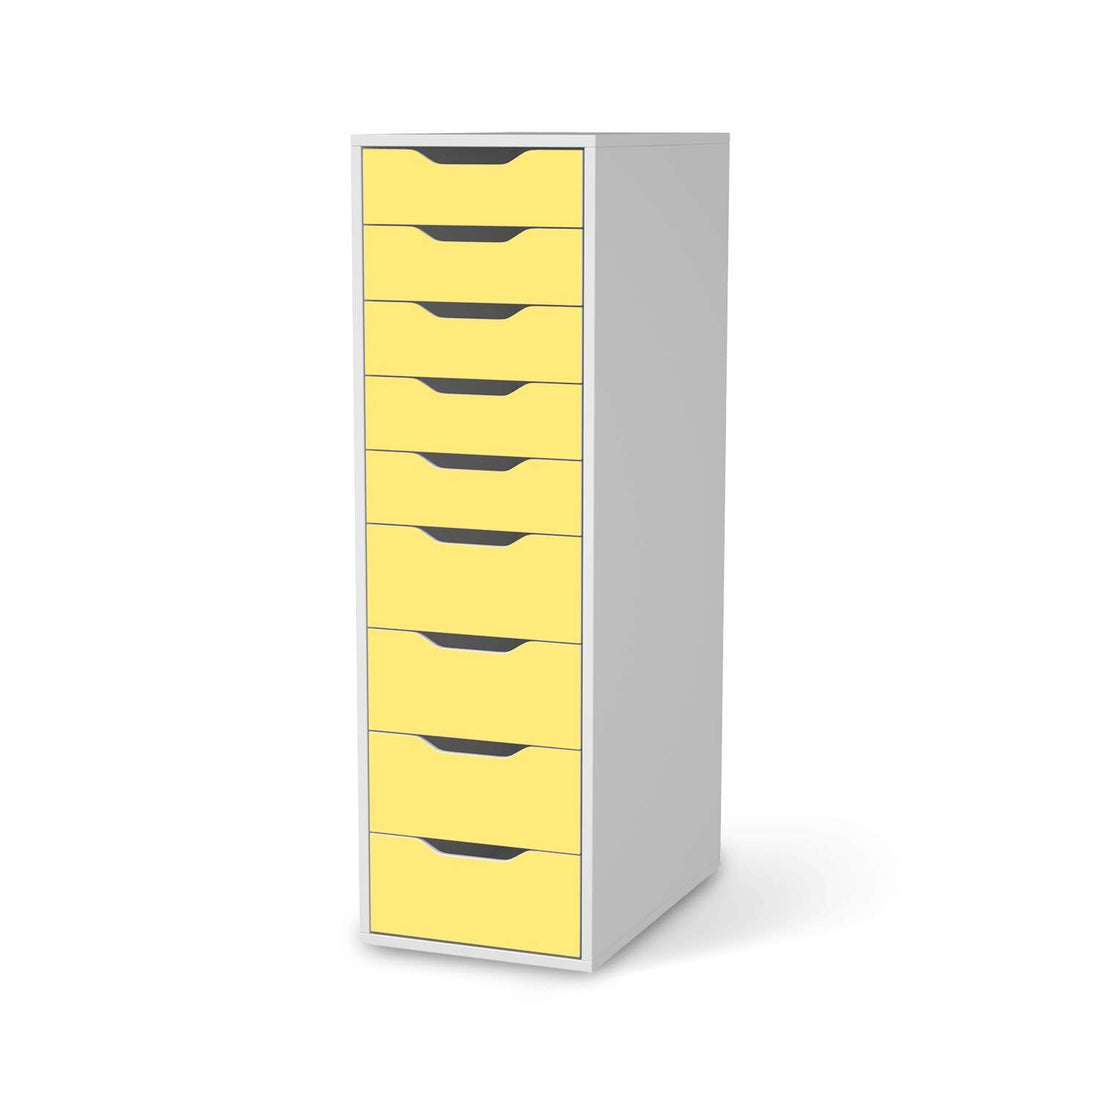 Folie für Möbel Gelb Light - IKEA Alex 9 Schubladen - weiss